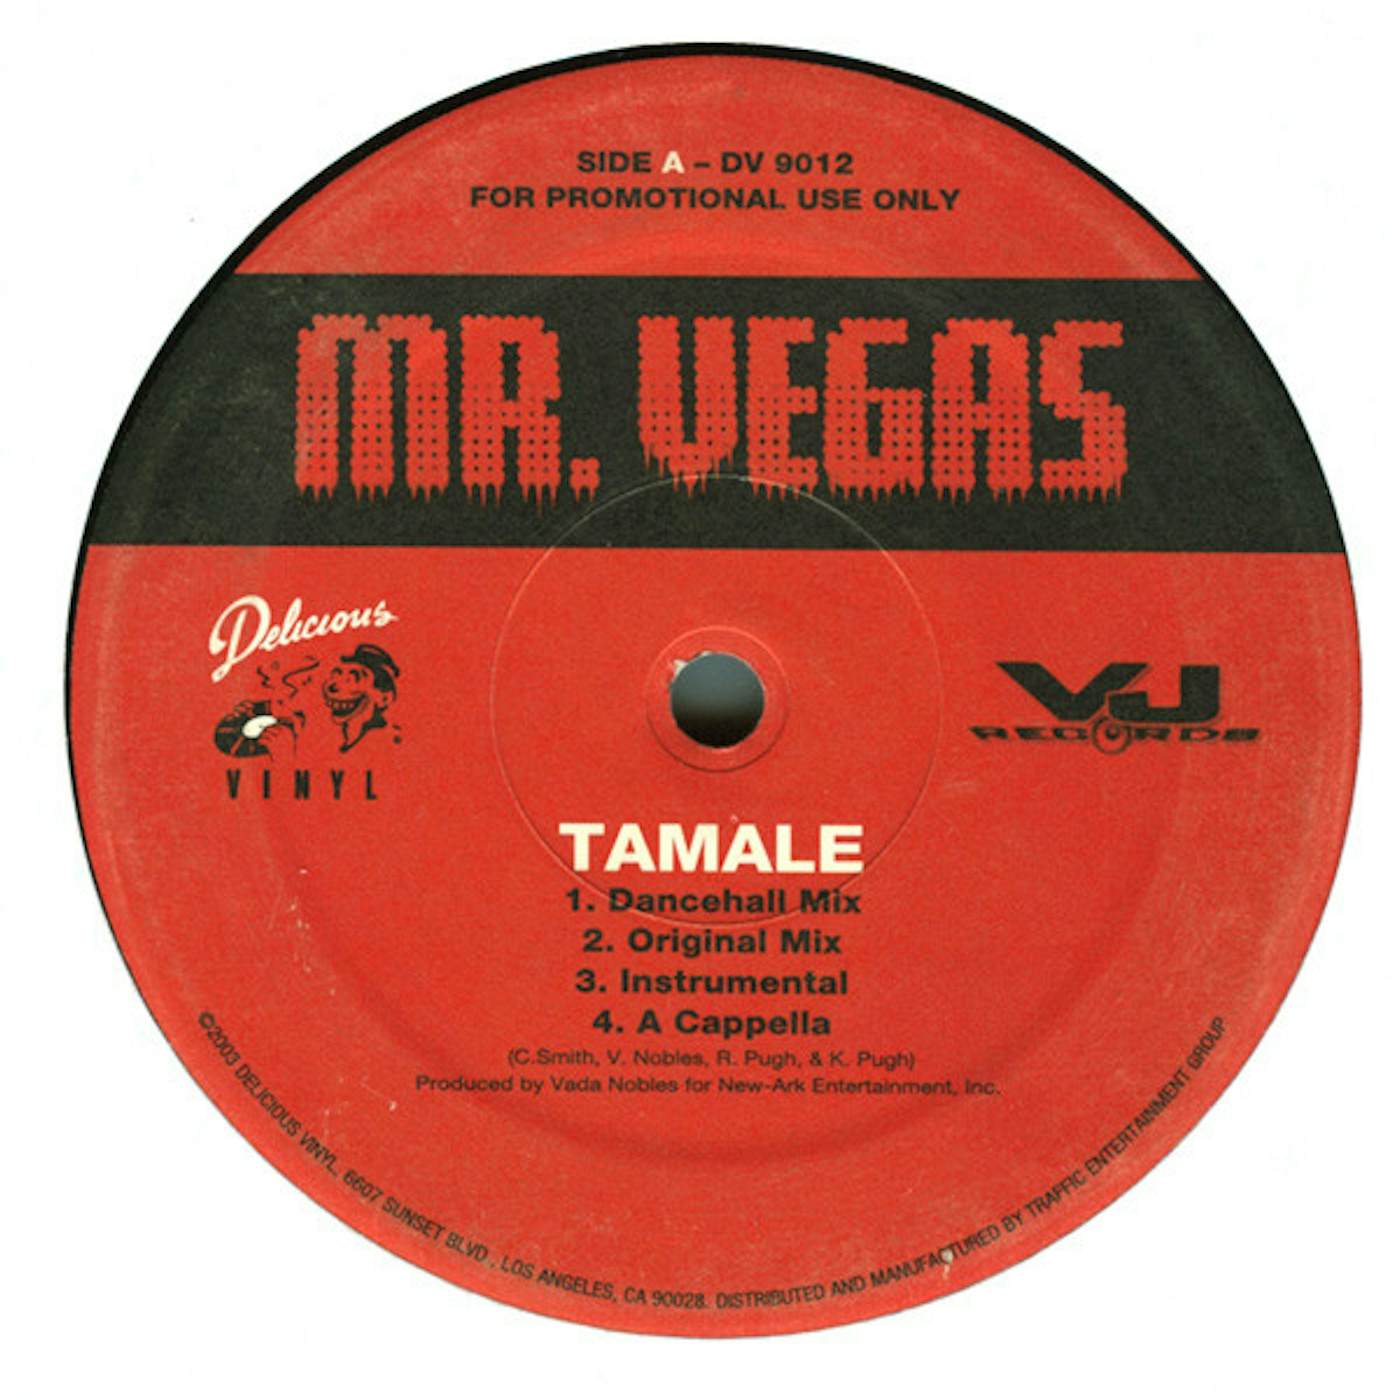 Mr. Vegas Tamale Vinyl Record